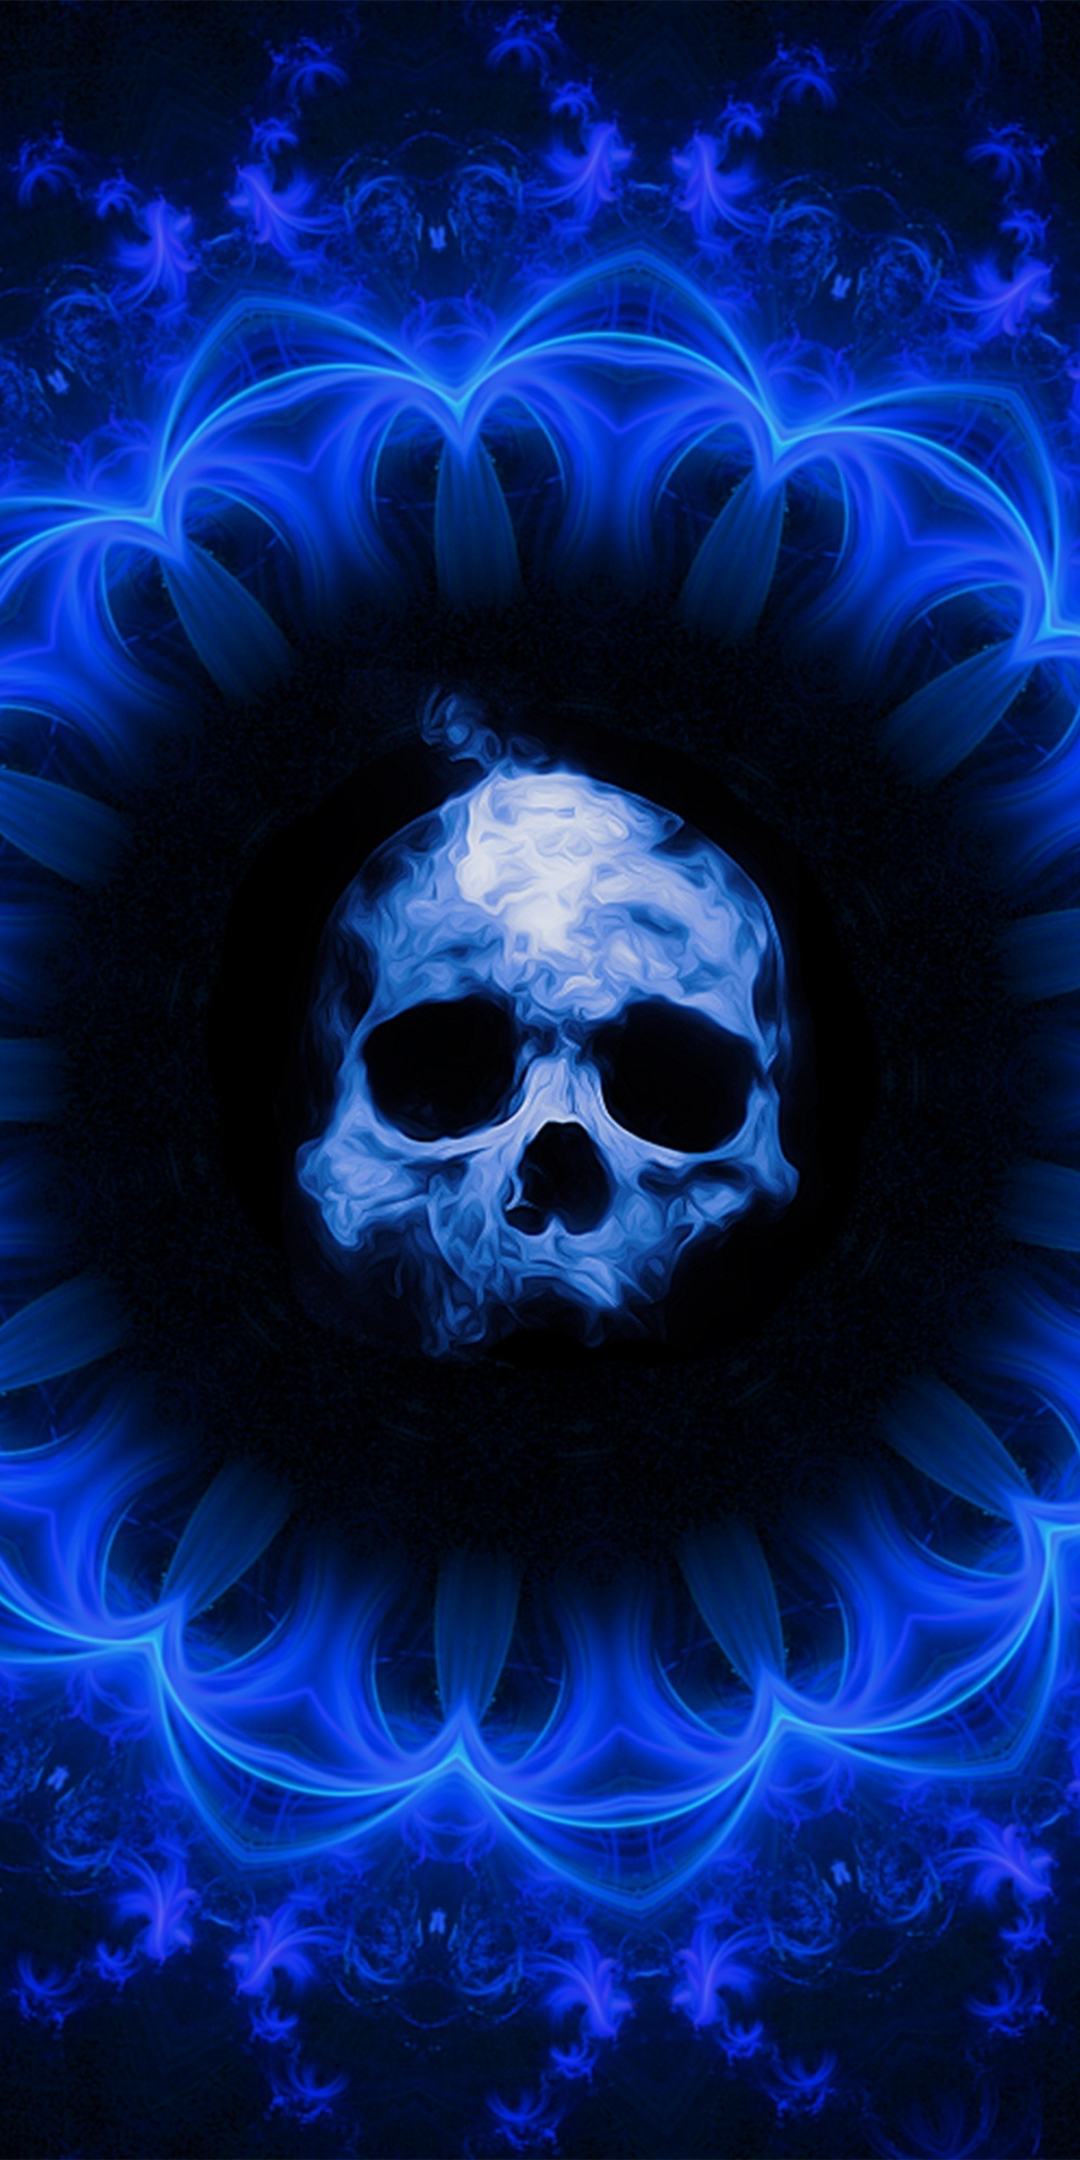 Skull, dark, blue gothic, fantasy, abstract, 1080x2160 wallpaper